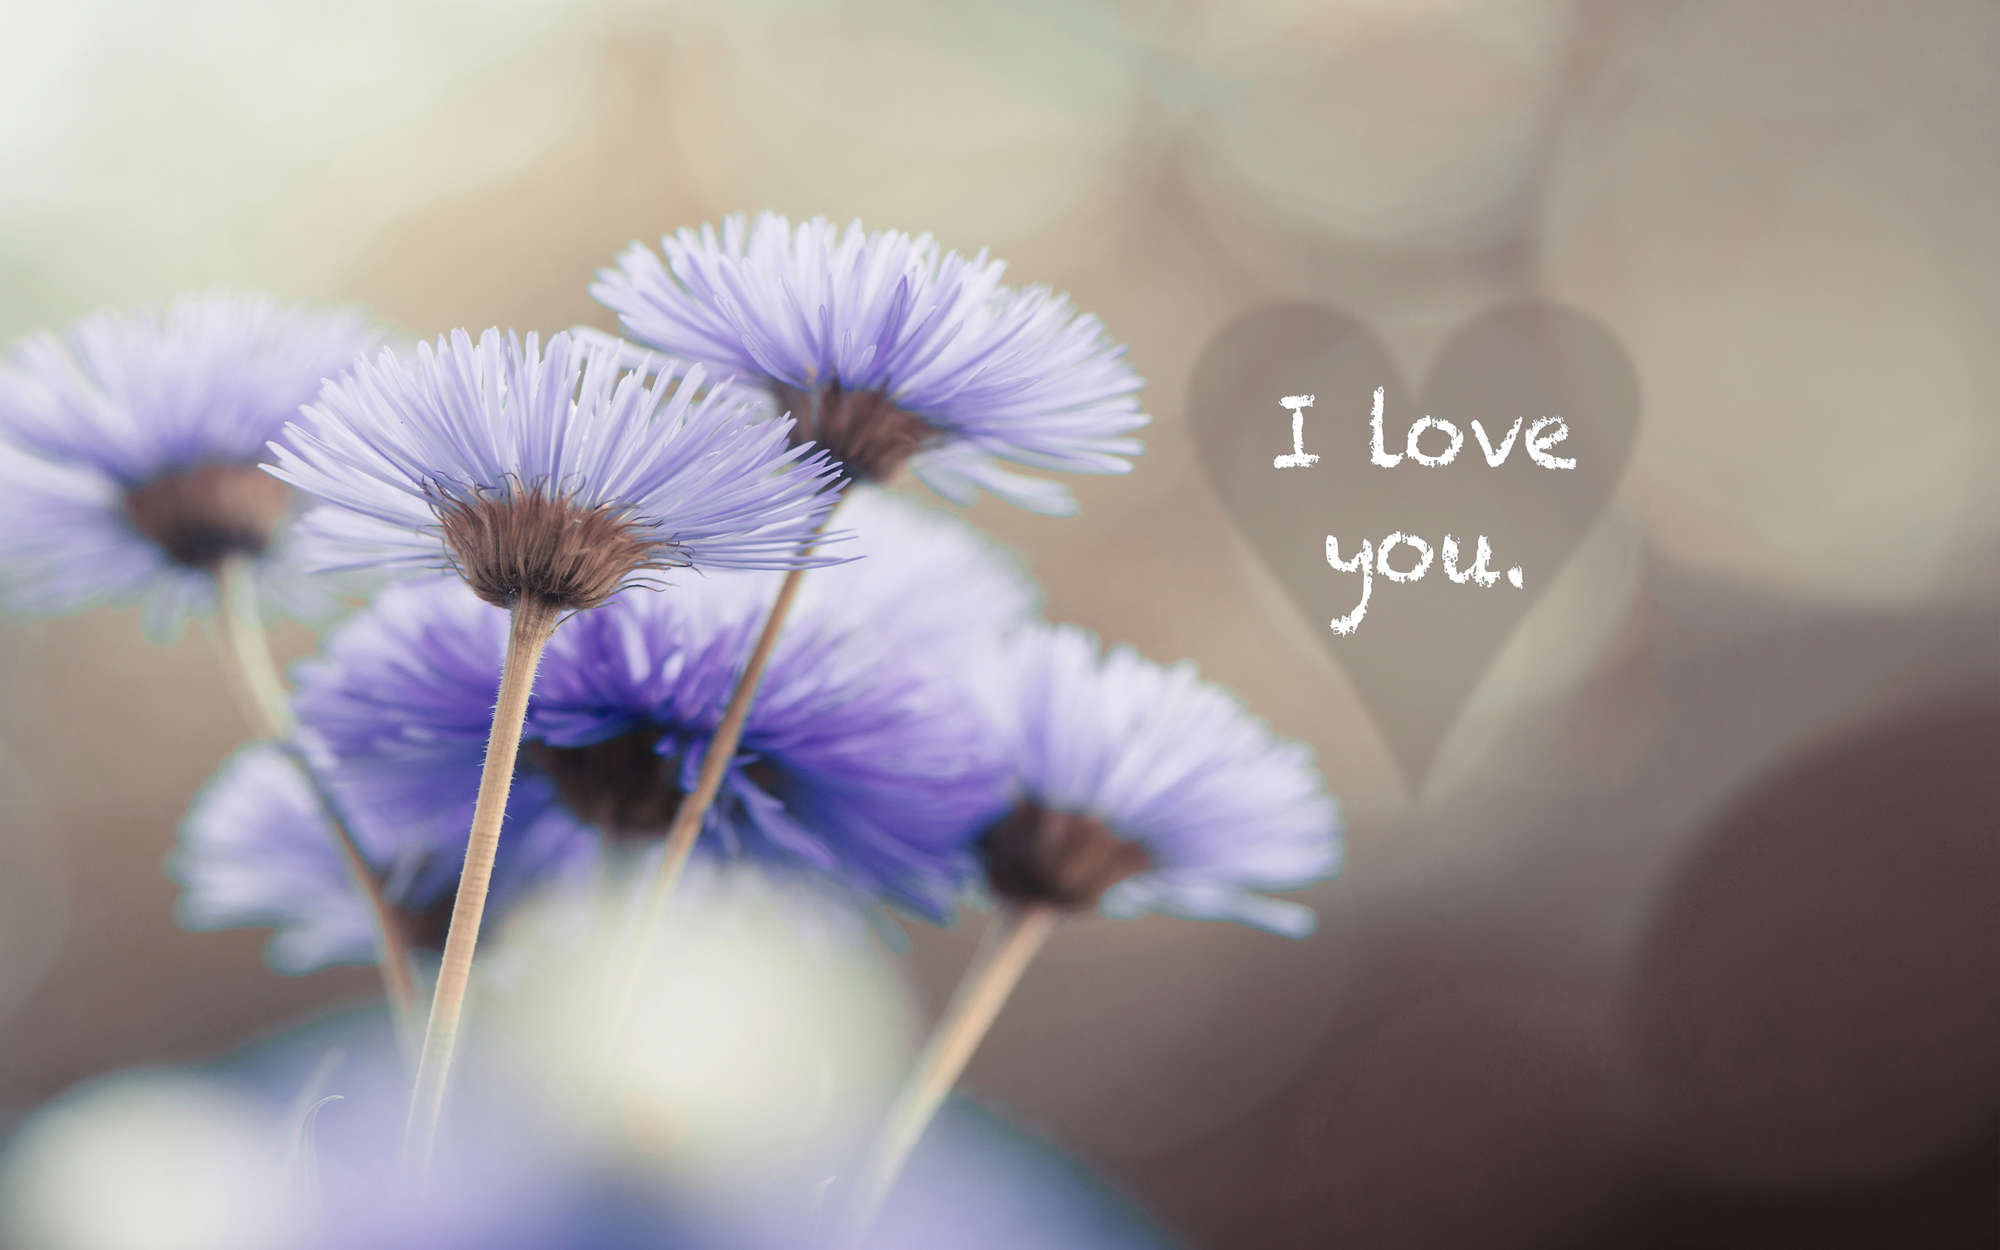             Fototapete Blumen in Violett mit Schriftzug "I love you" – Premium Glattvlies
        